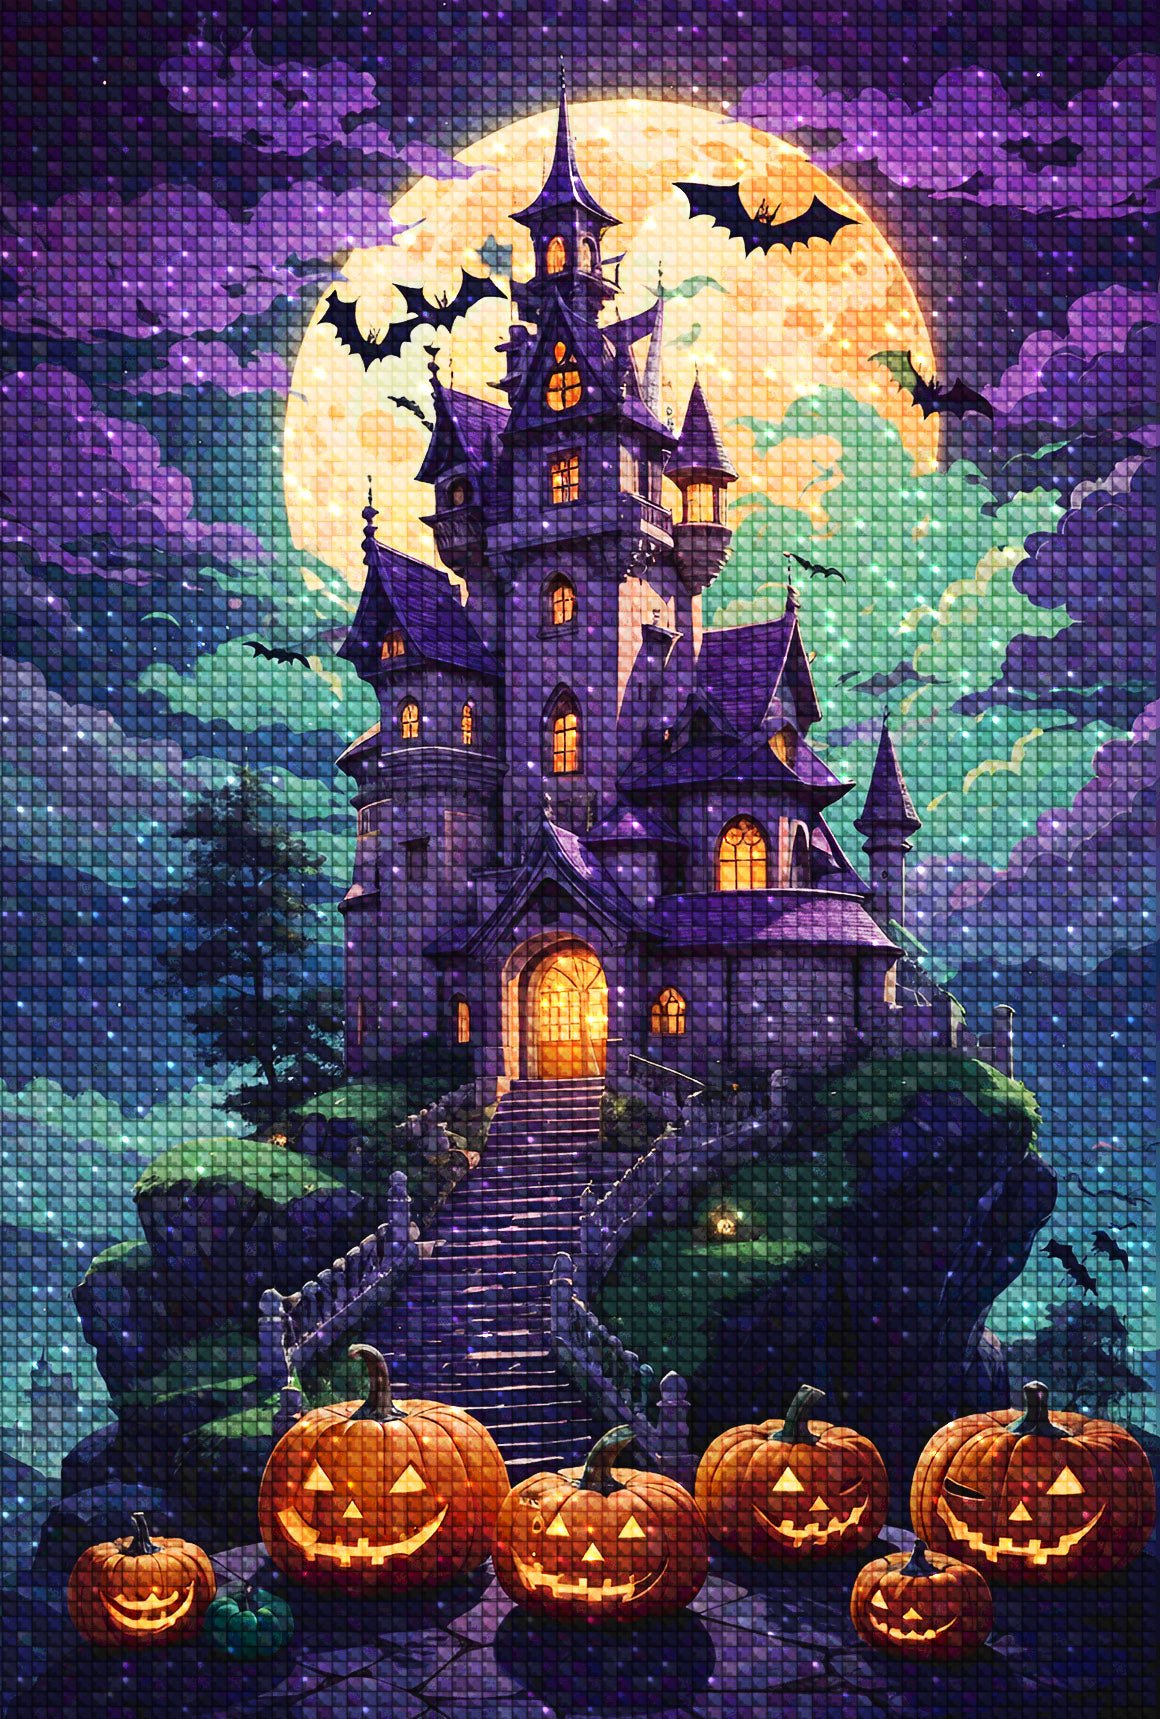 Haunted Pumpkin Castle - Diamond Painting Kit - Artslo.com